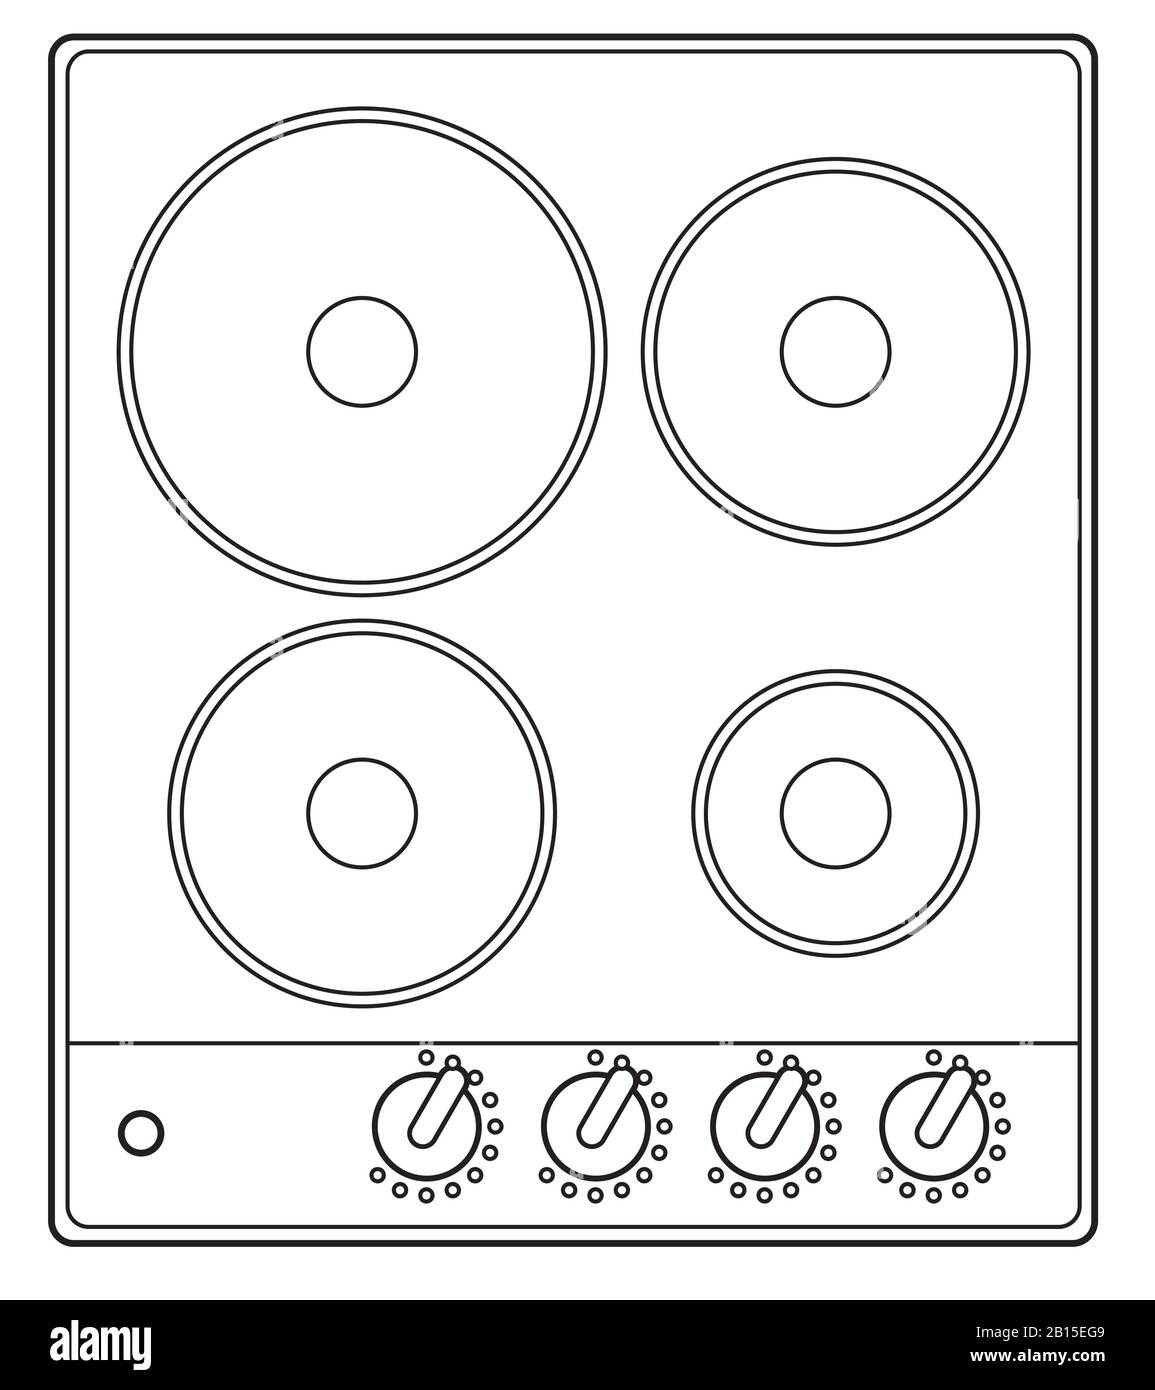 Plan d'une table de cuisson électrique activée montrant quatre plaques chauffantes classiques Illustration de Vecteur